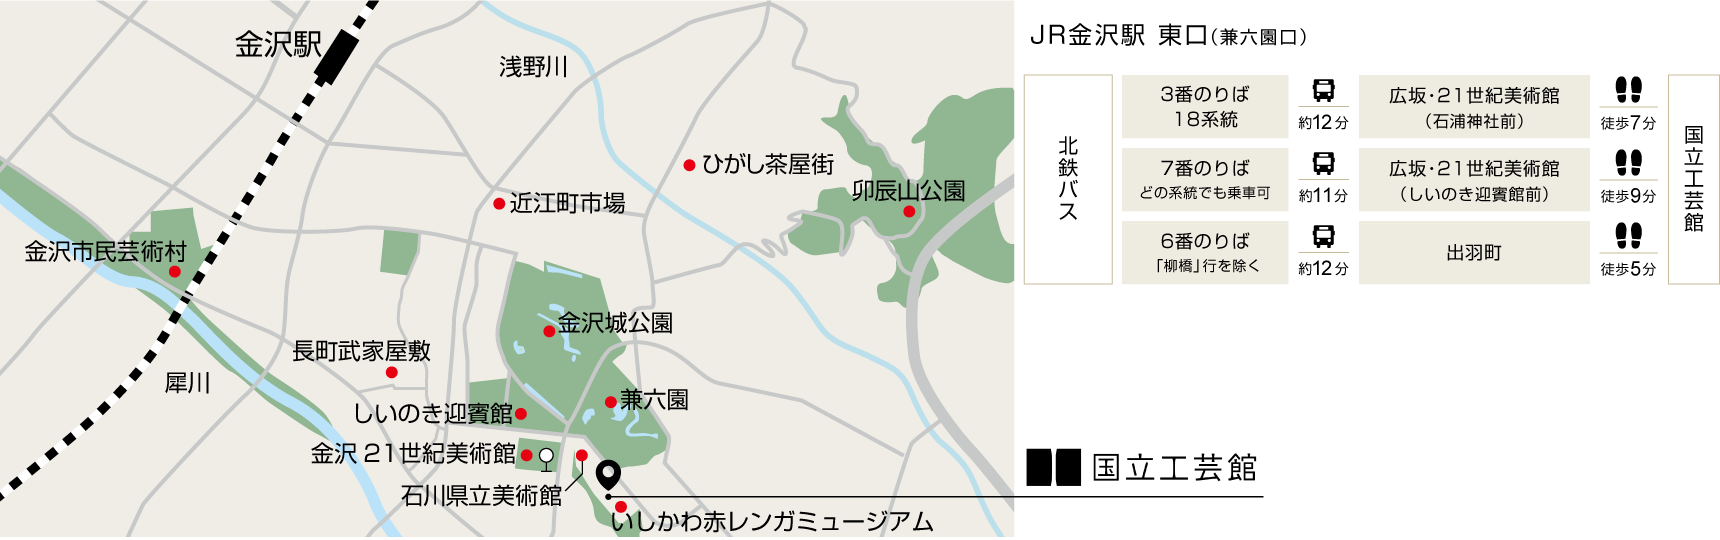 金沢マップ画像